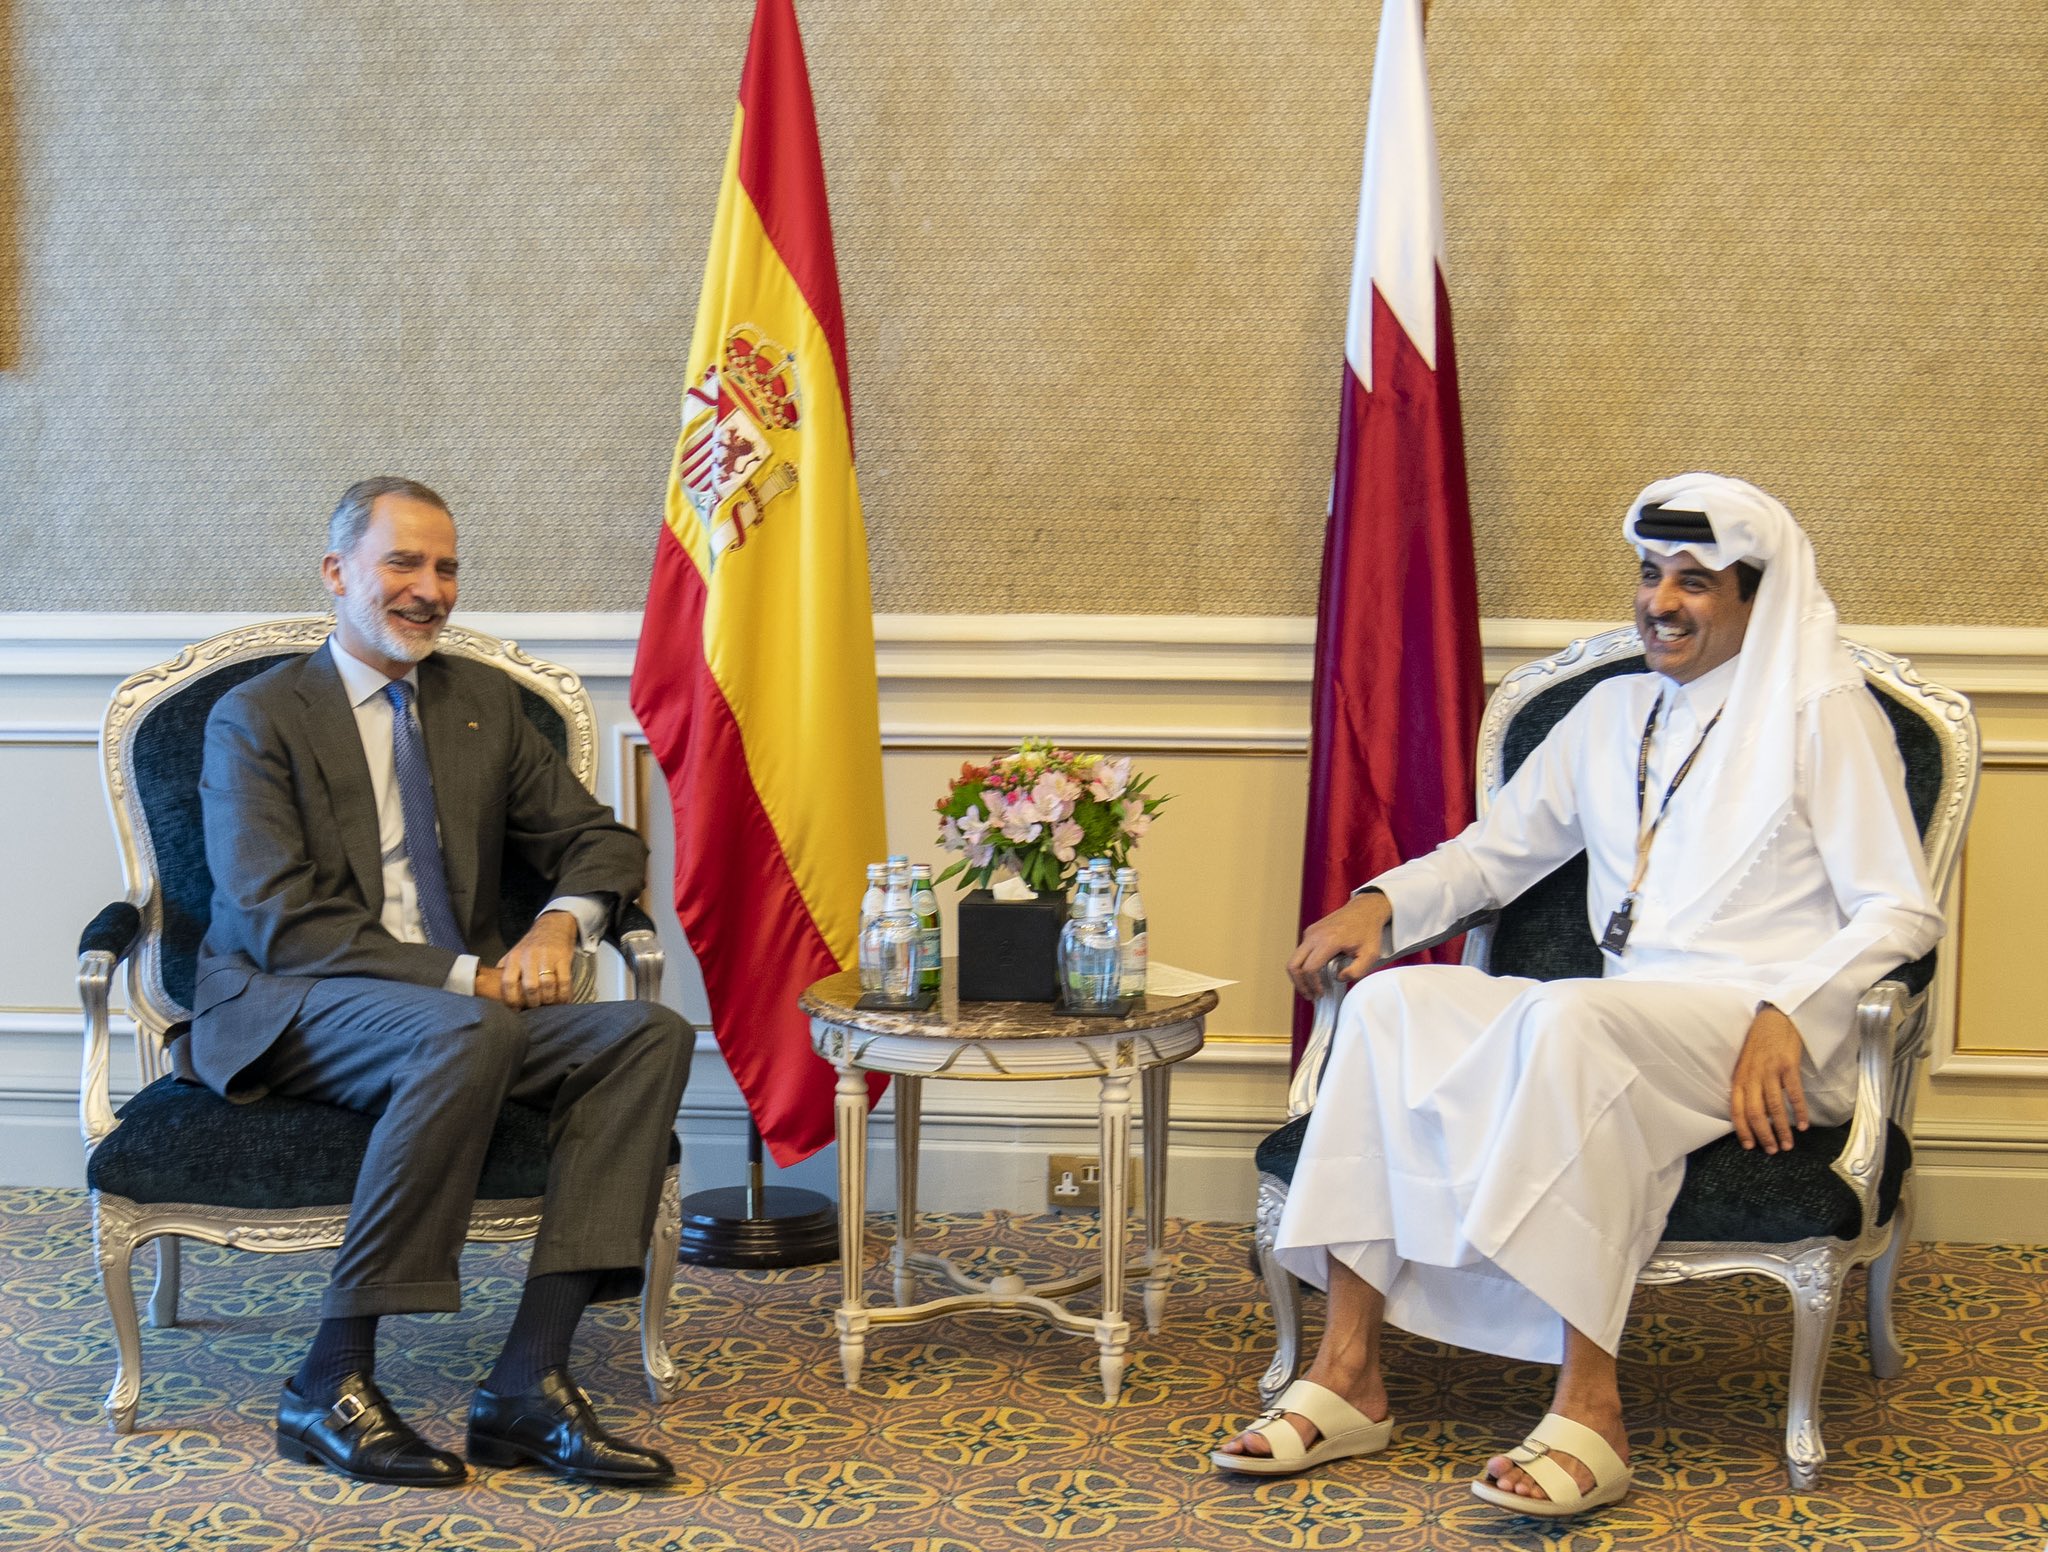  أمير دولة قطر الشيخ تميم بن حمد آل ثاني مع ملك إسبانيا فيليبي السادس (الديوان الأميري القطري)